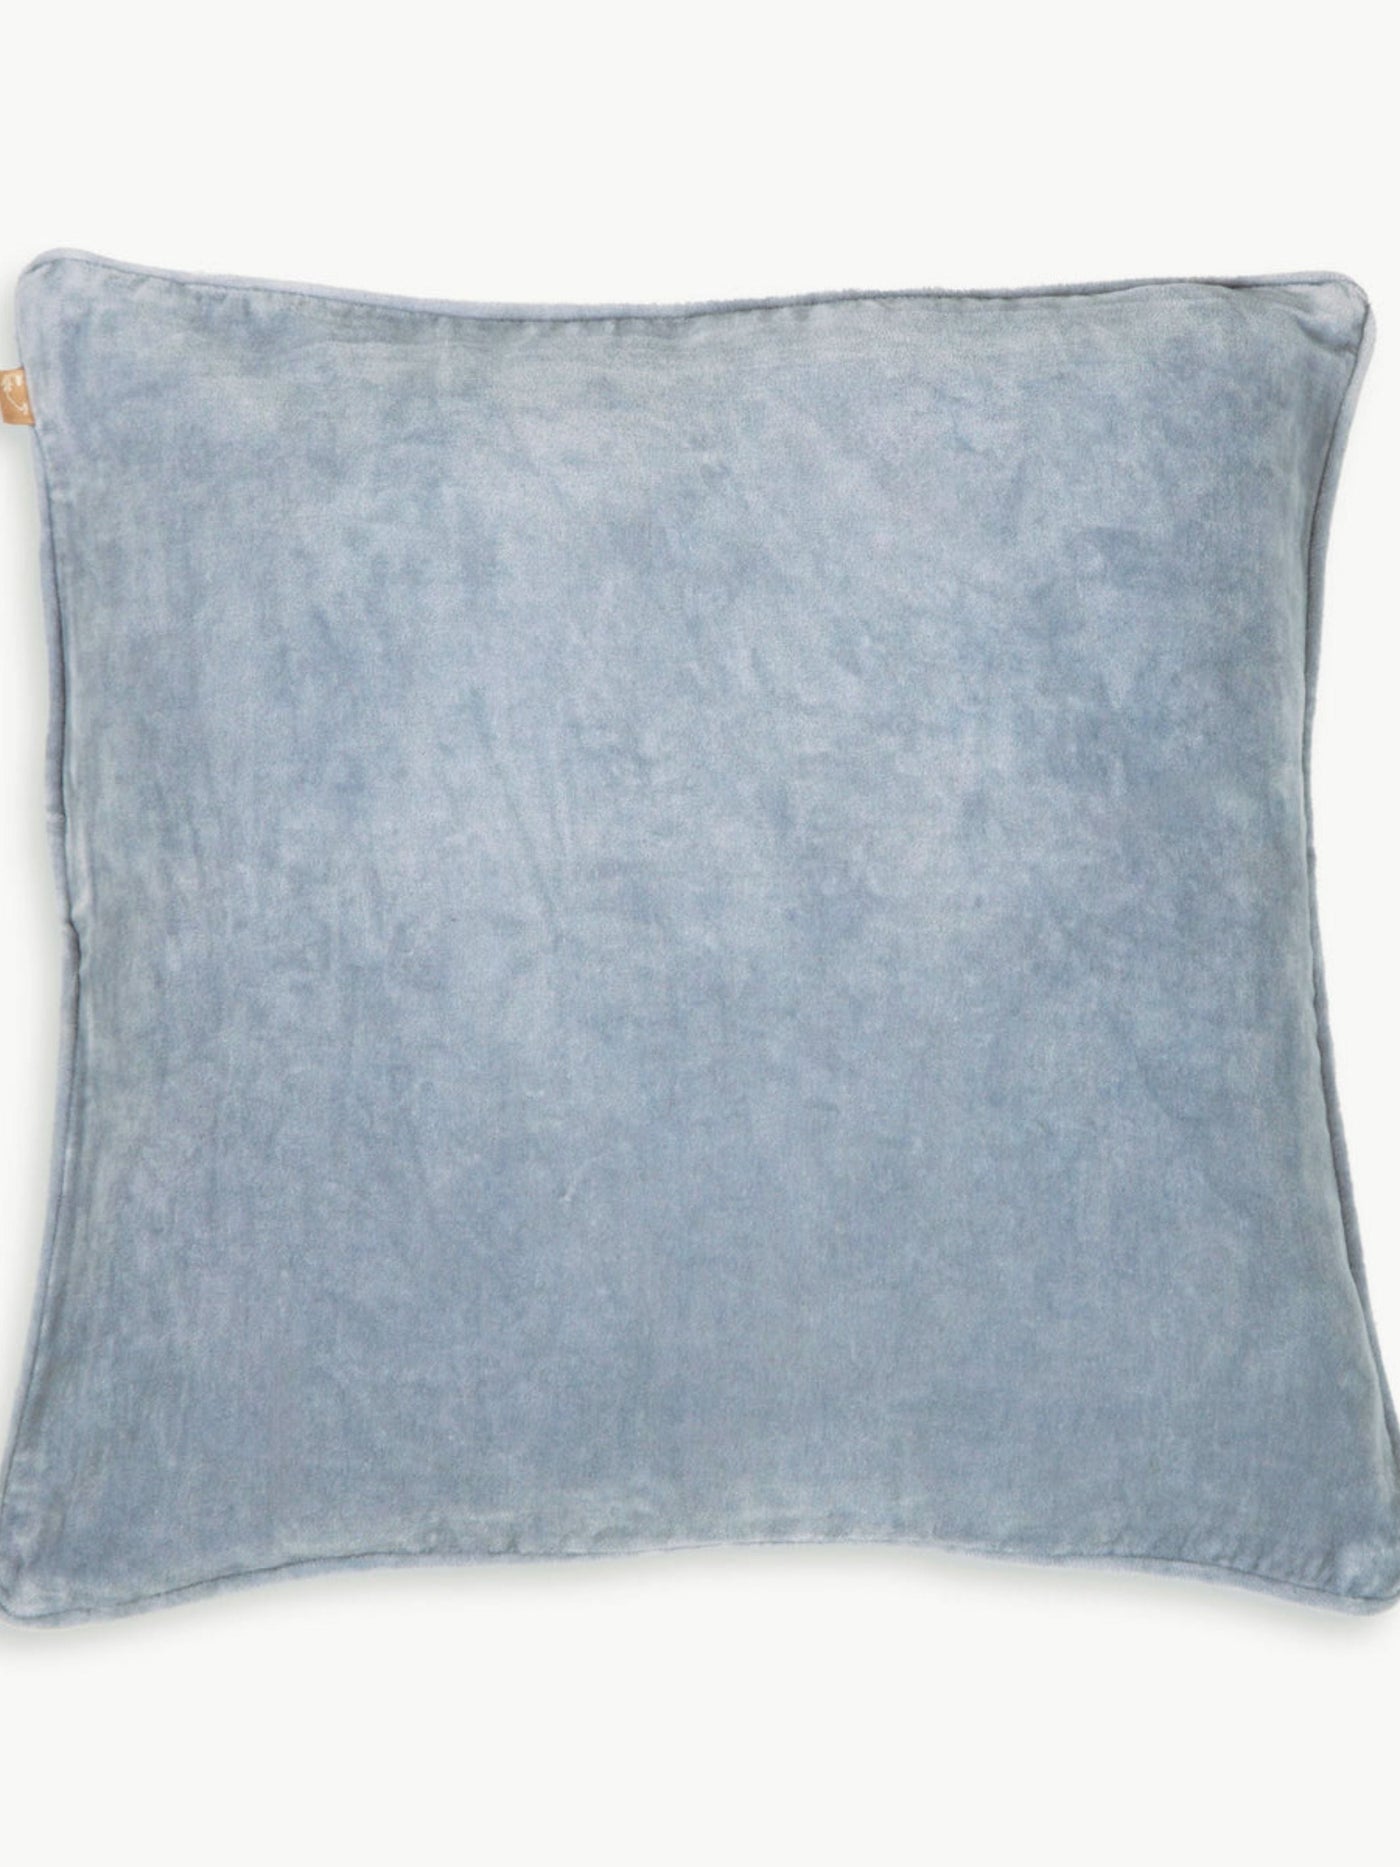 Cushion Cover - Baby Blue Velvet